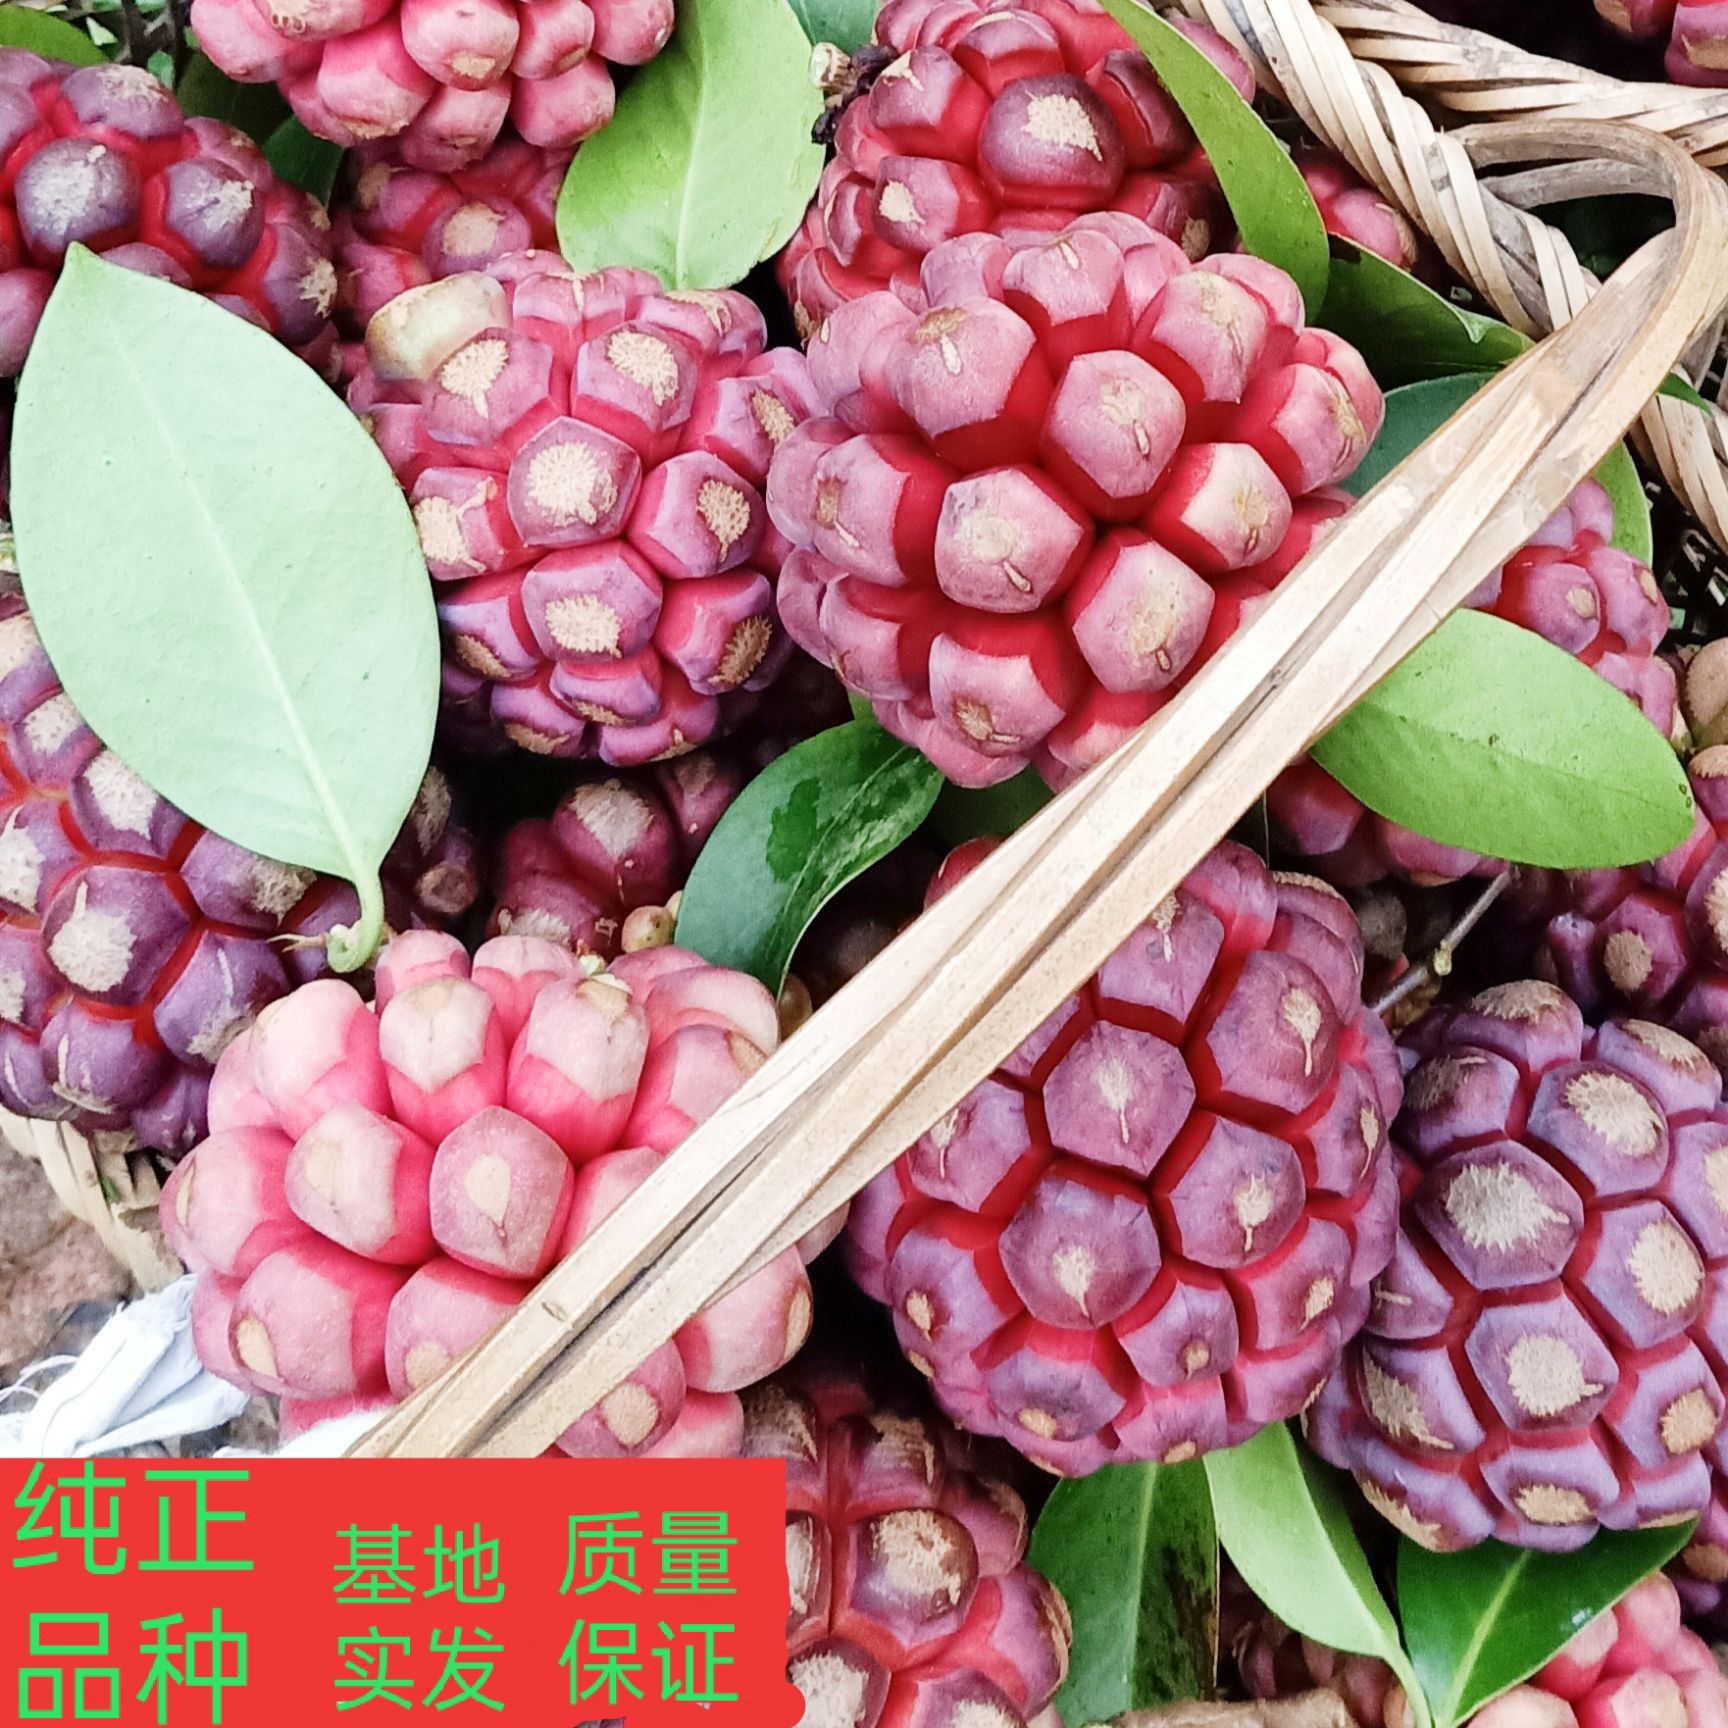 通道侗族自治县黑老虎种子  黑老虎布福娜优质紫红品种，颗粒饱满